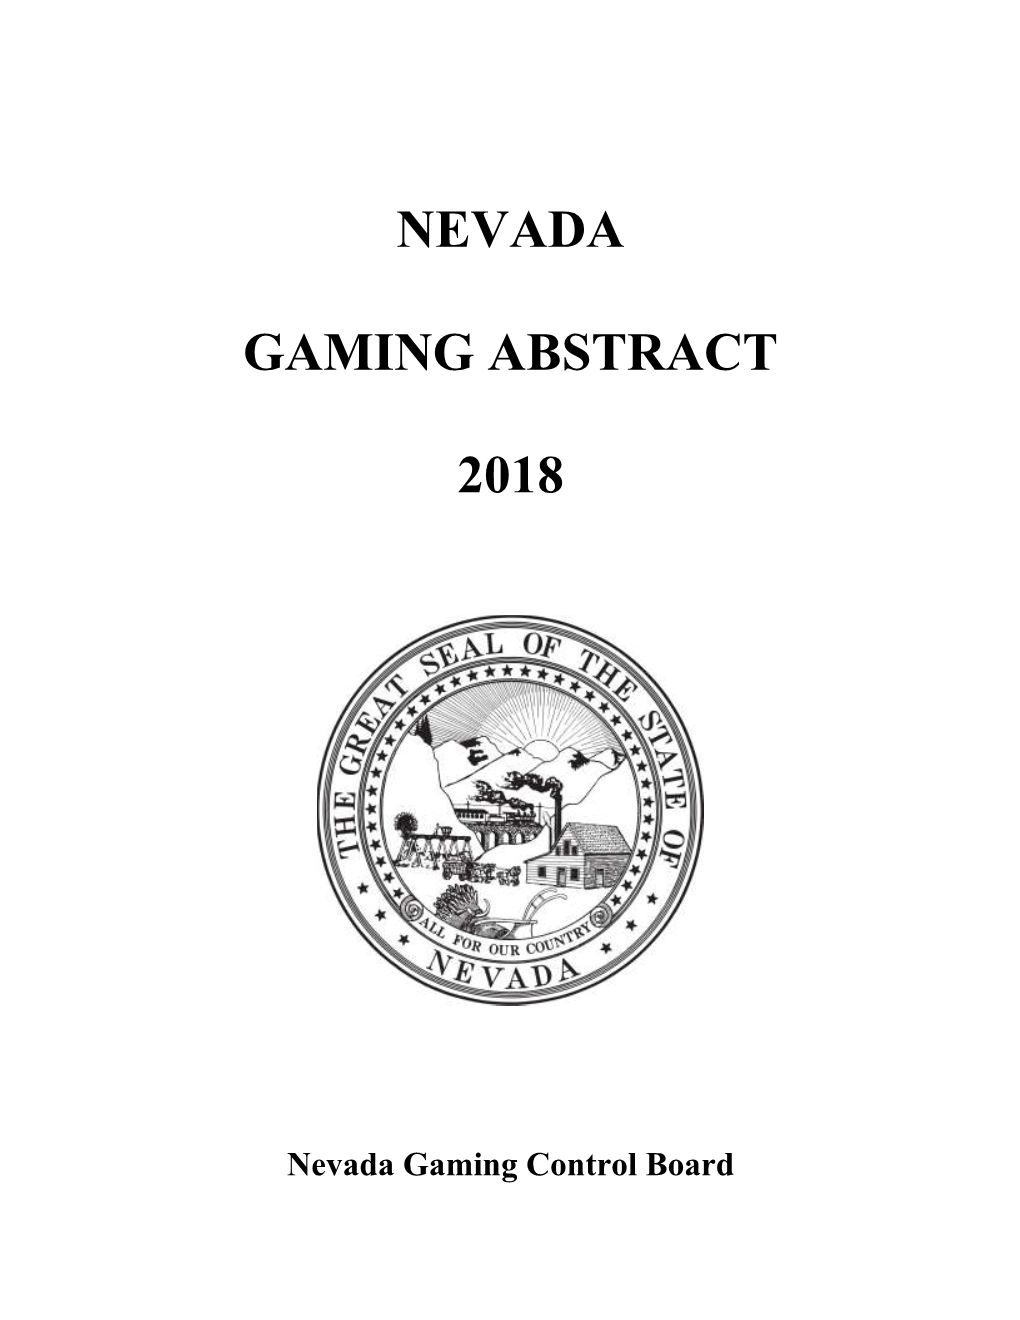 Nevada Gaming Abstract 2018